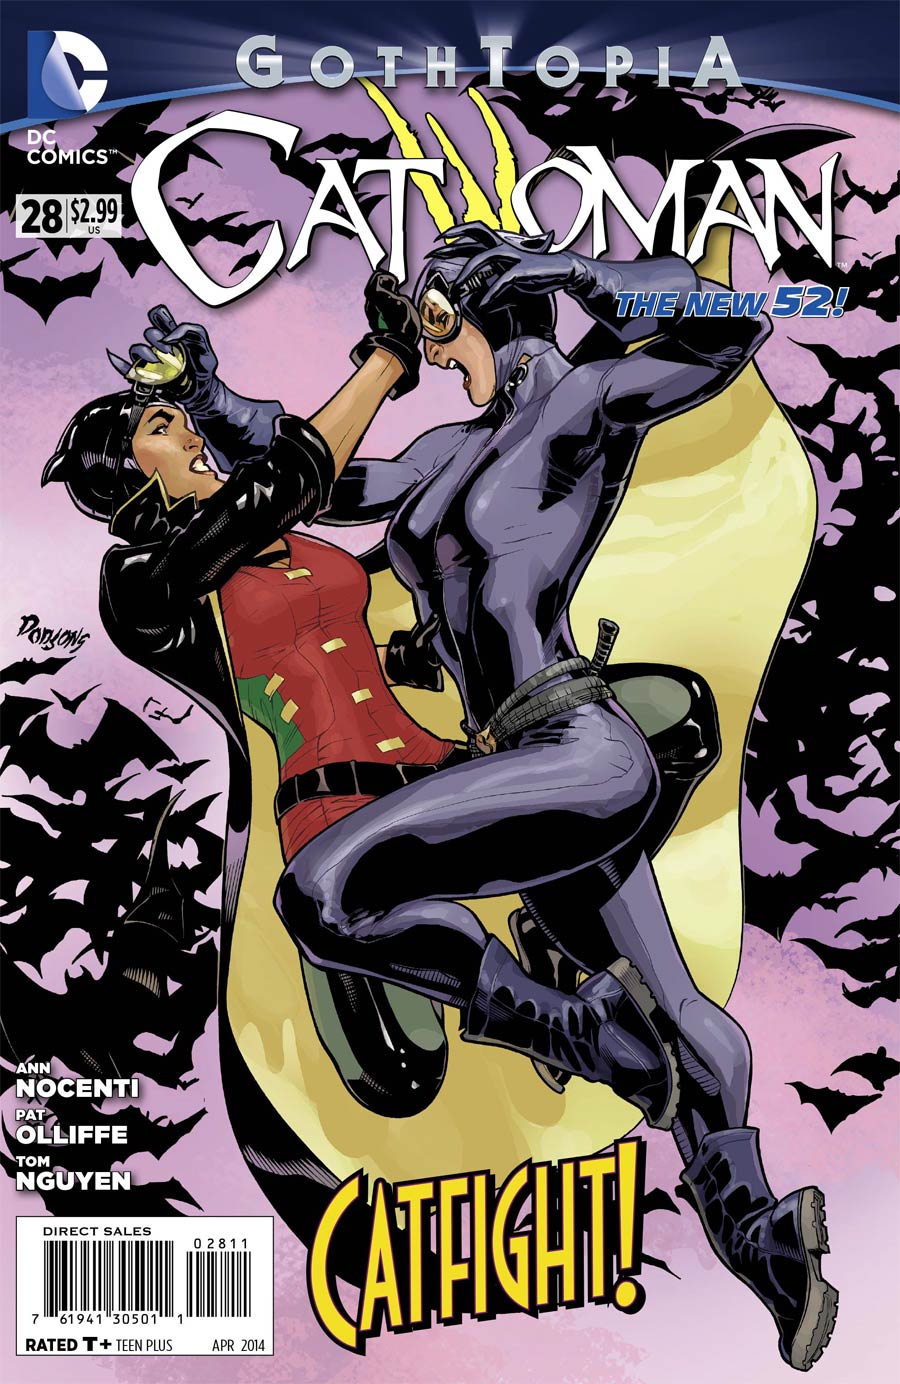 Catwoman Vol 4 #28 (Gothtopia Tie-In)